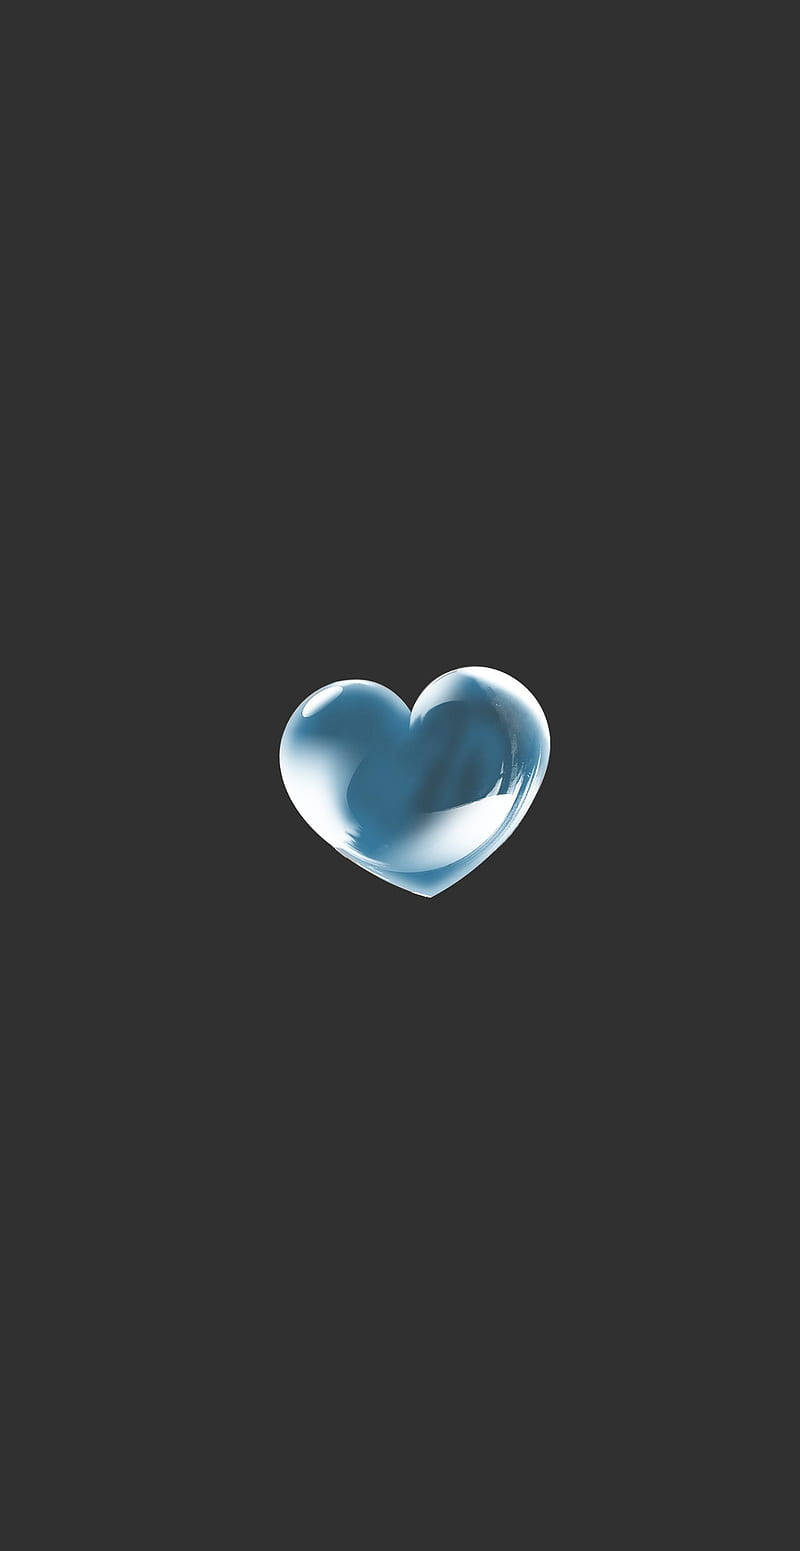 Blue Heart Digital Art Wallpaper